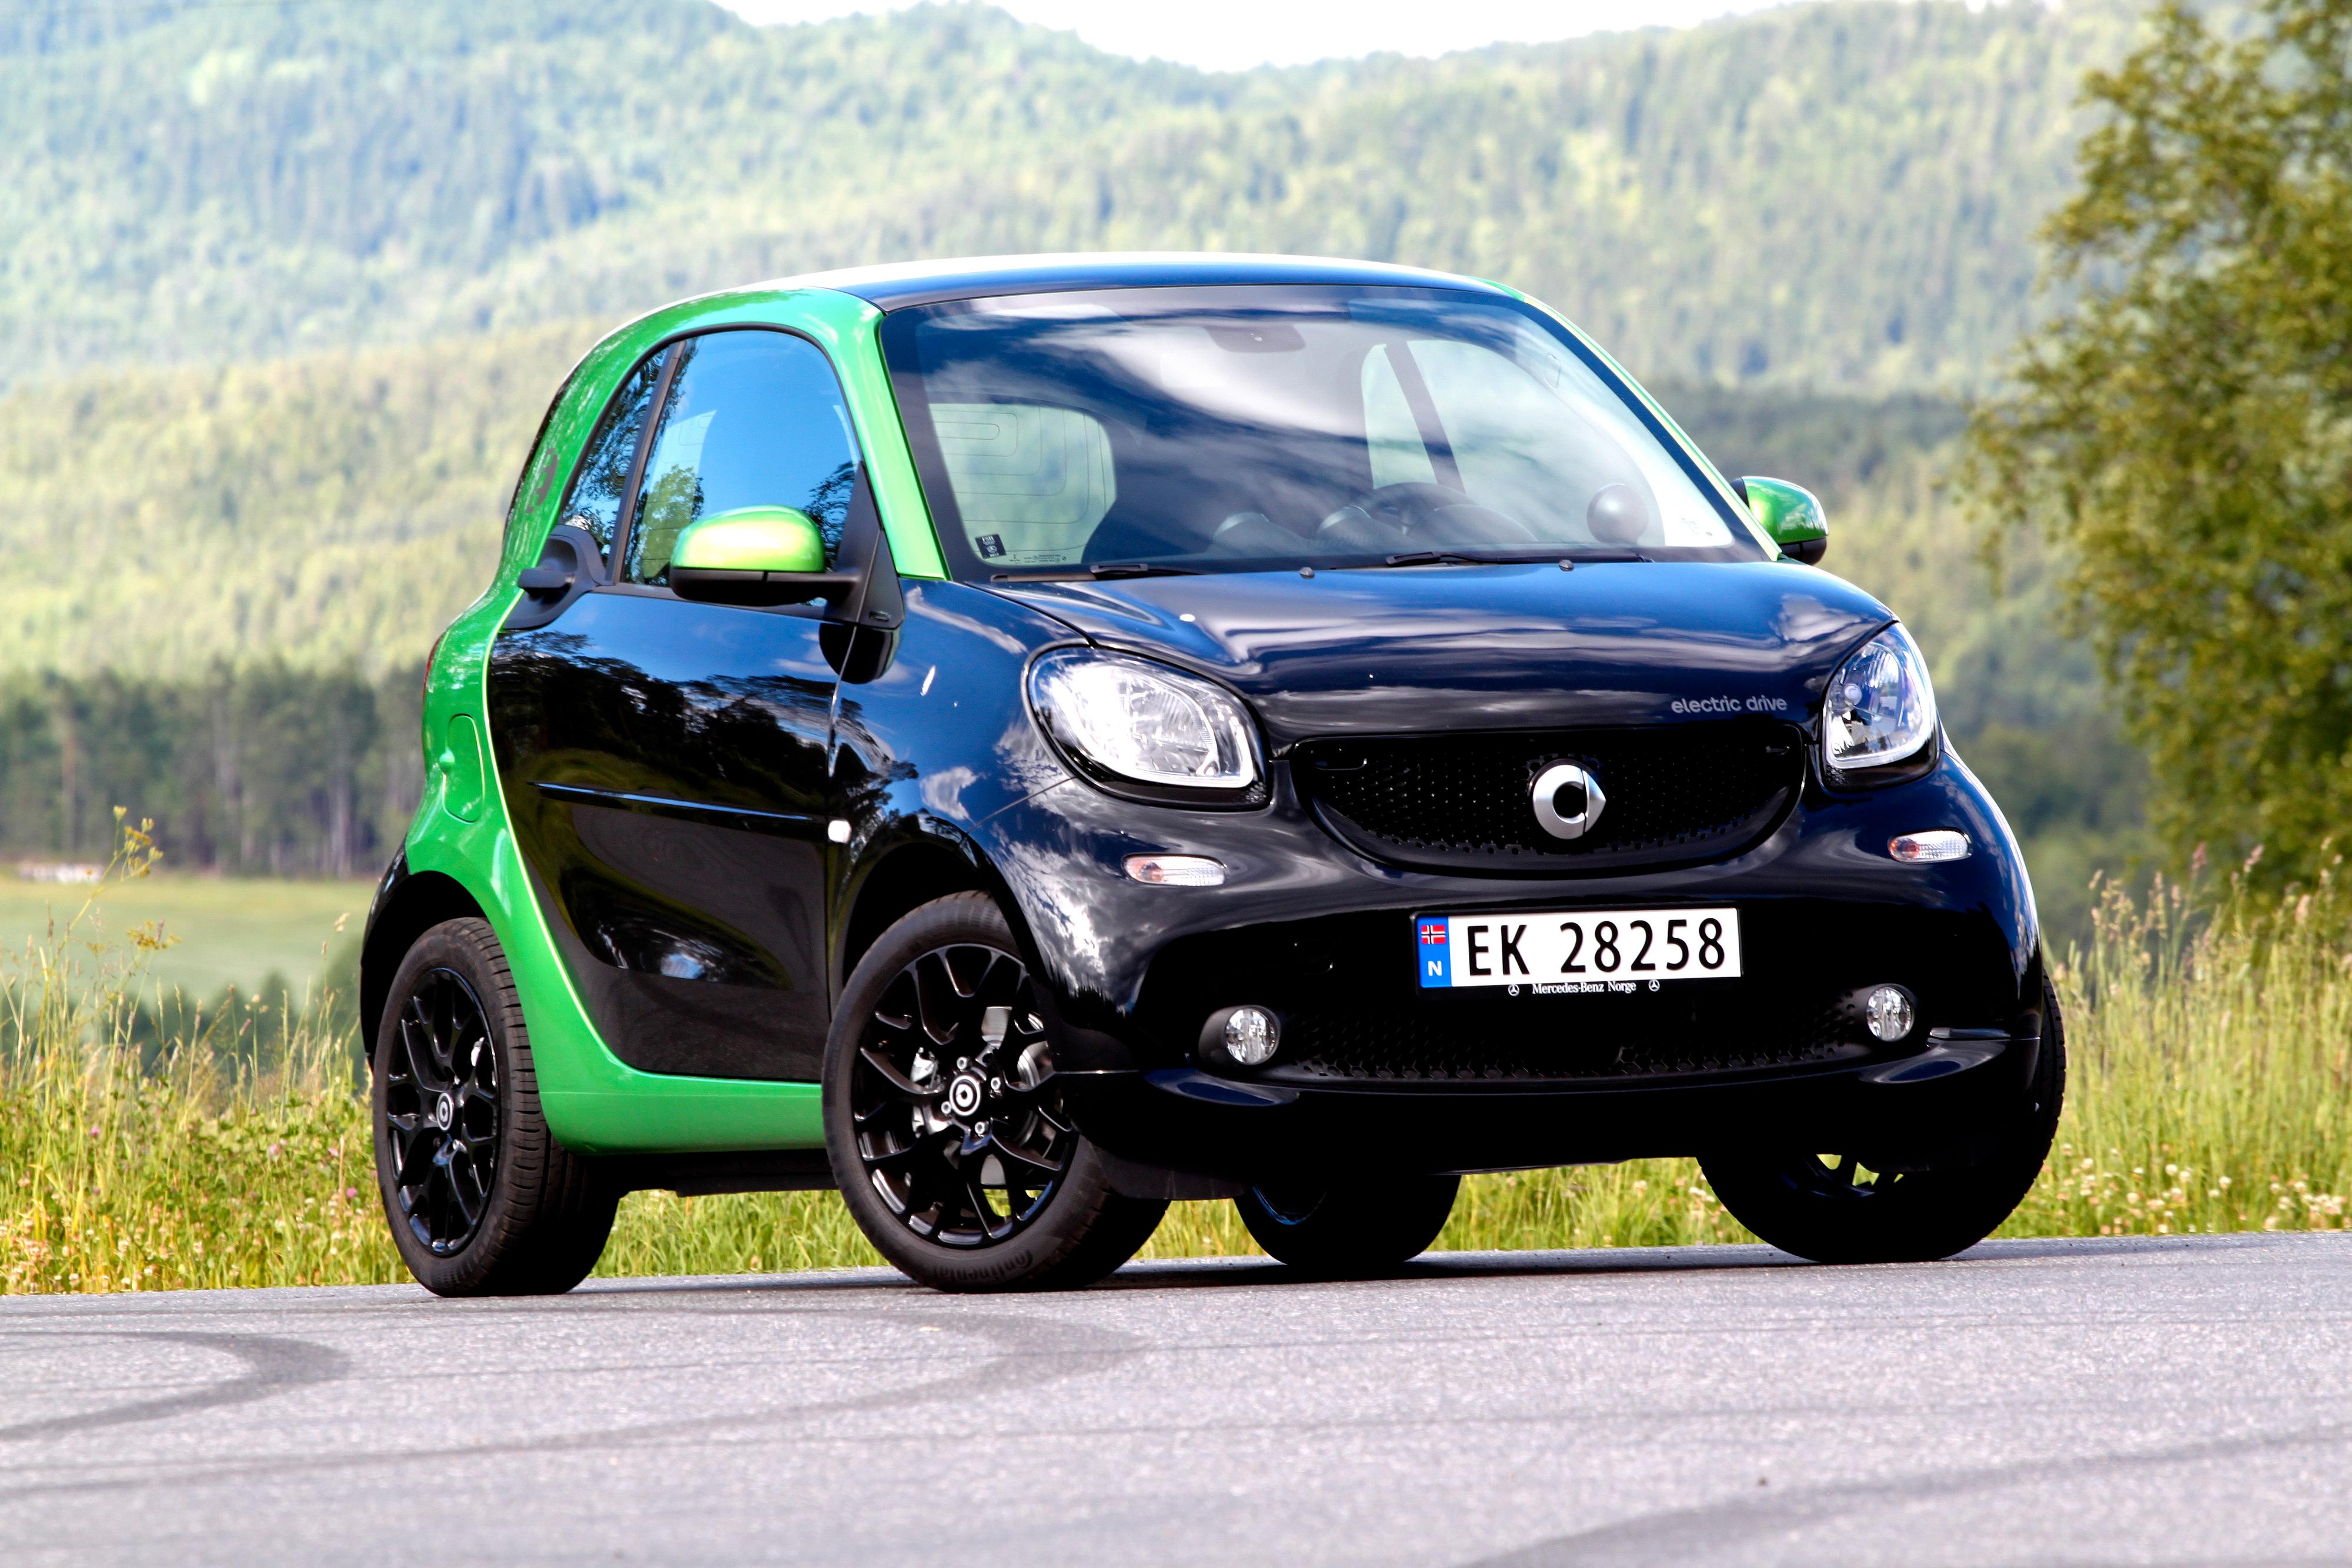 Smart fortwo selges kun som elbil i Norge. Den kan leveres umiddelbart, melder Mercedes-Benz Norge.